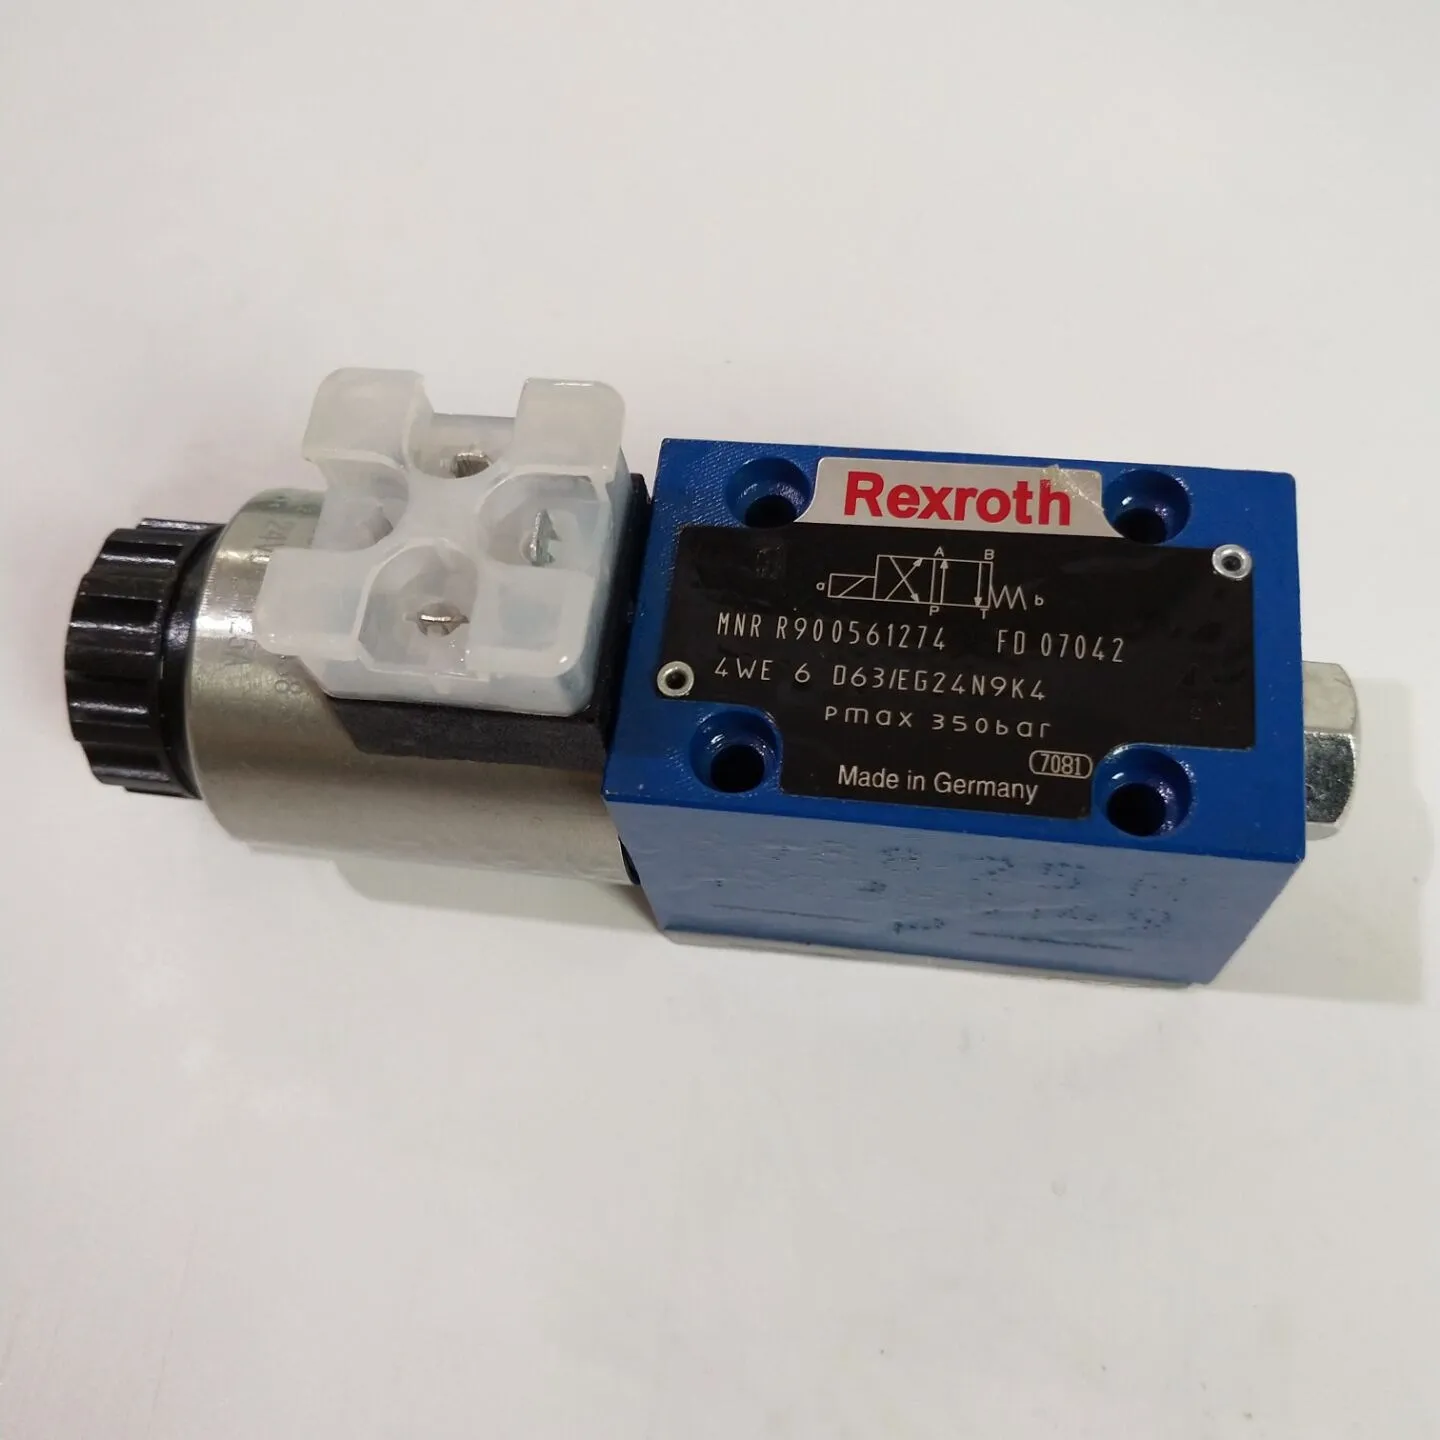 Rexroth 4WE6D63/EG24N9K4 R900561274 24V solenoid valve